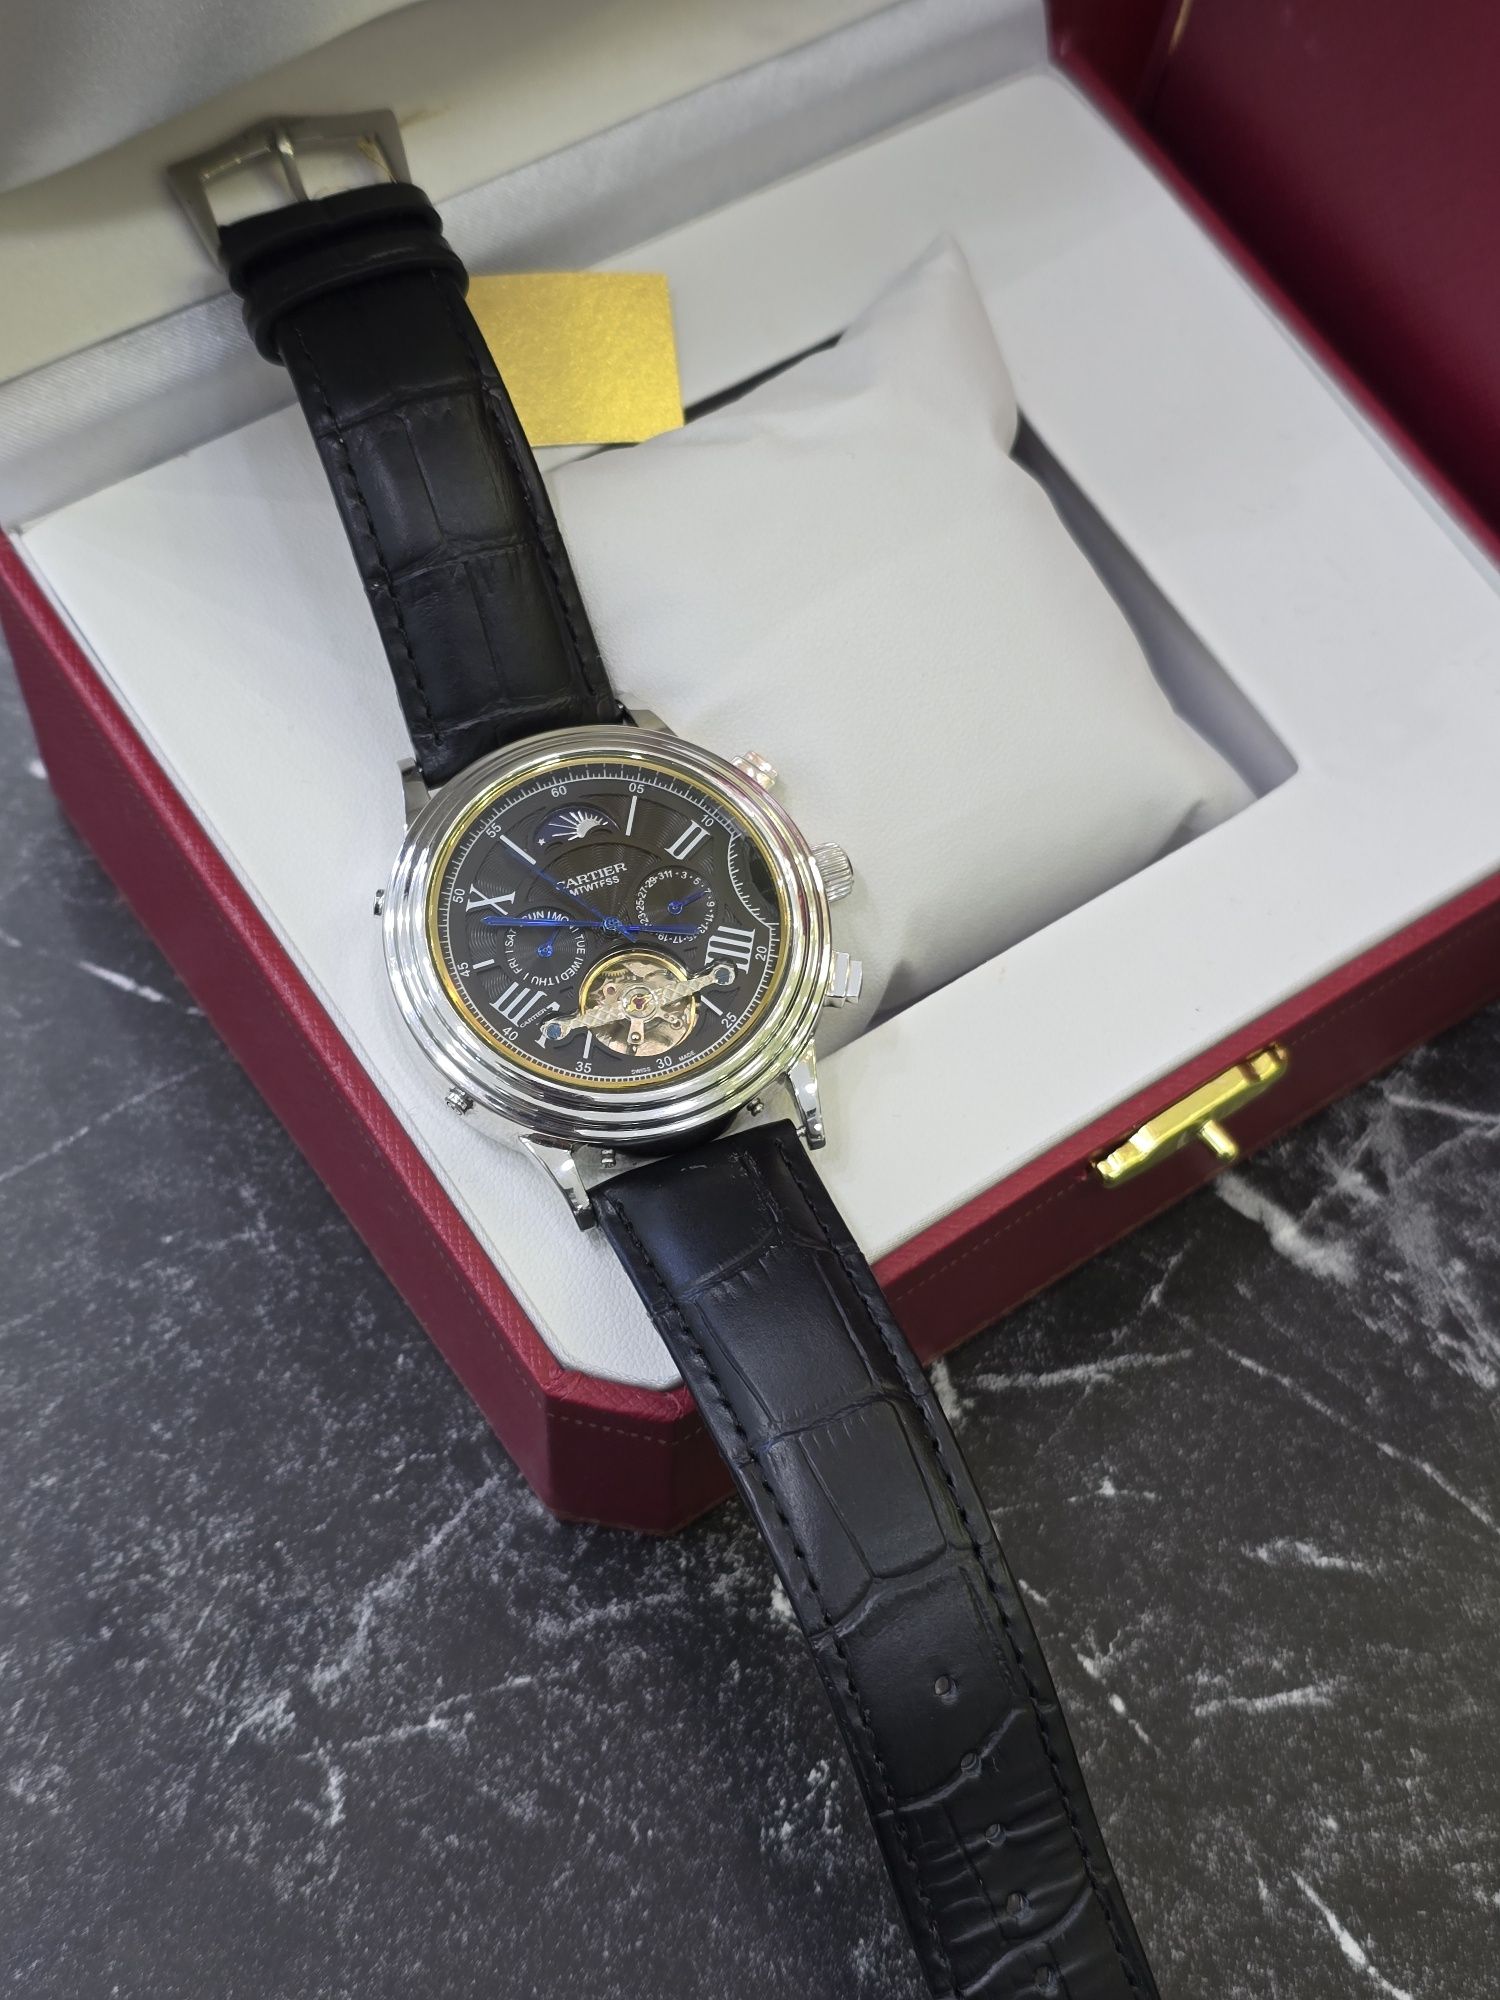 Продам наручные часы Cartier из белого золота в крупном диаметре.